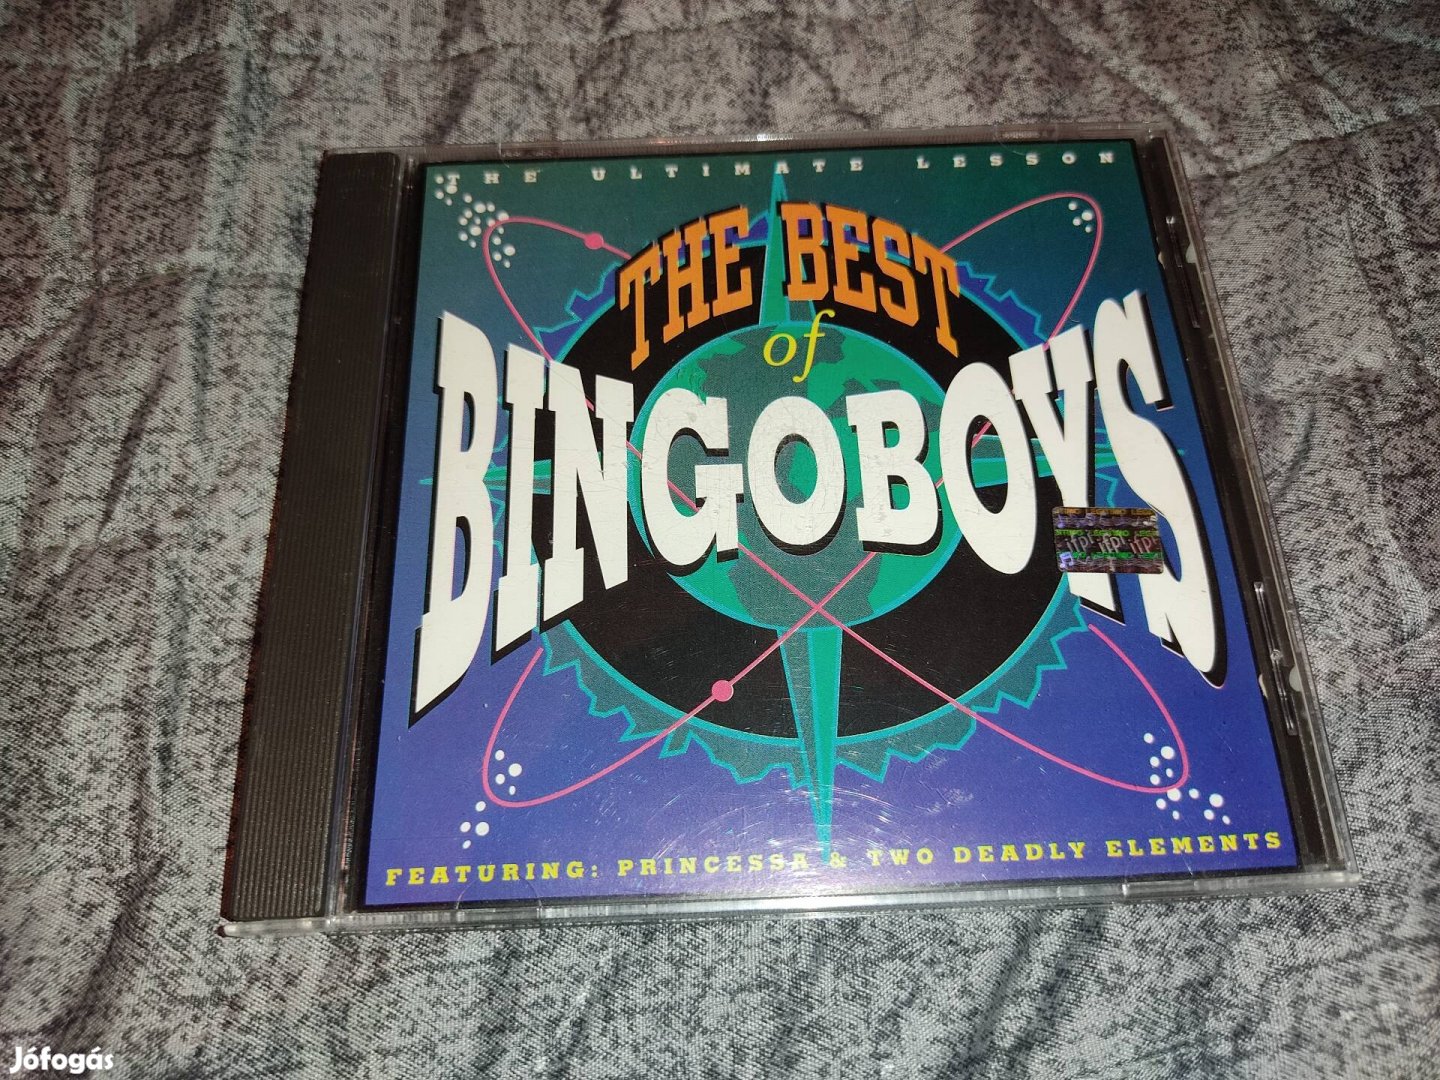 Bingo Boys - The Best CD (1991)